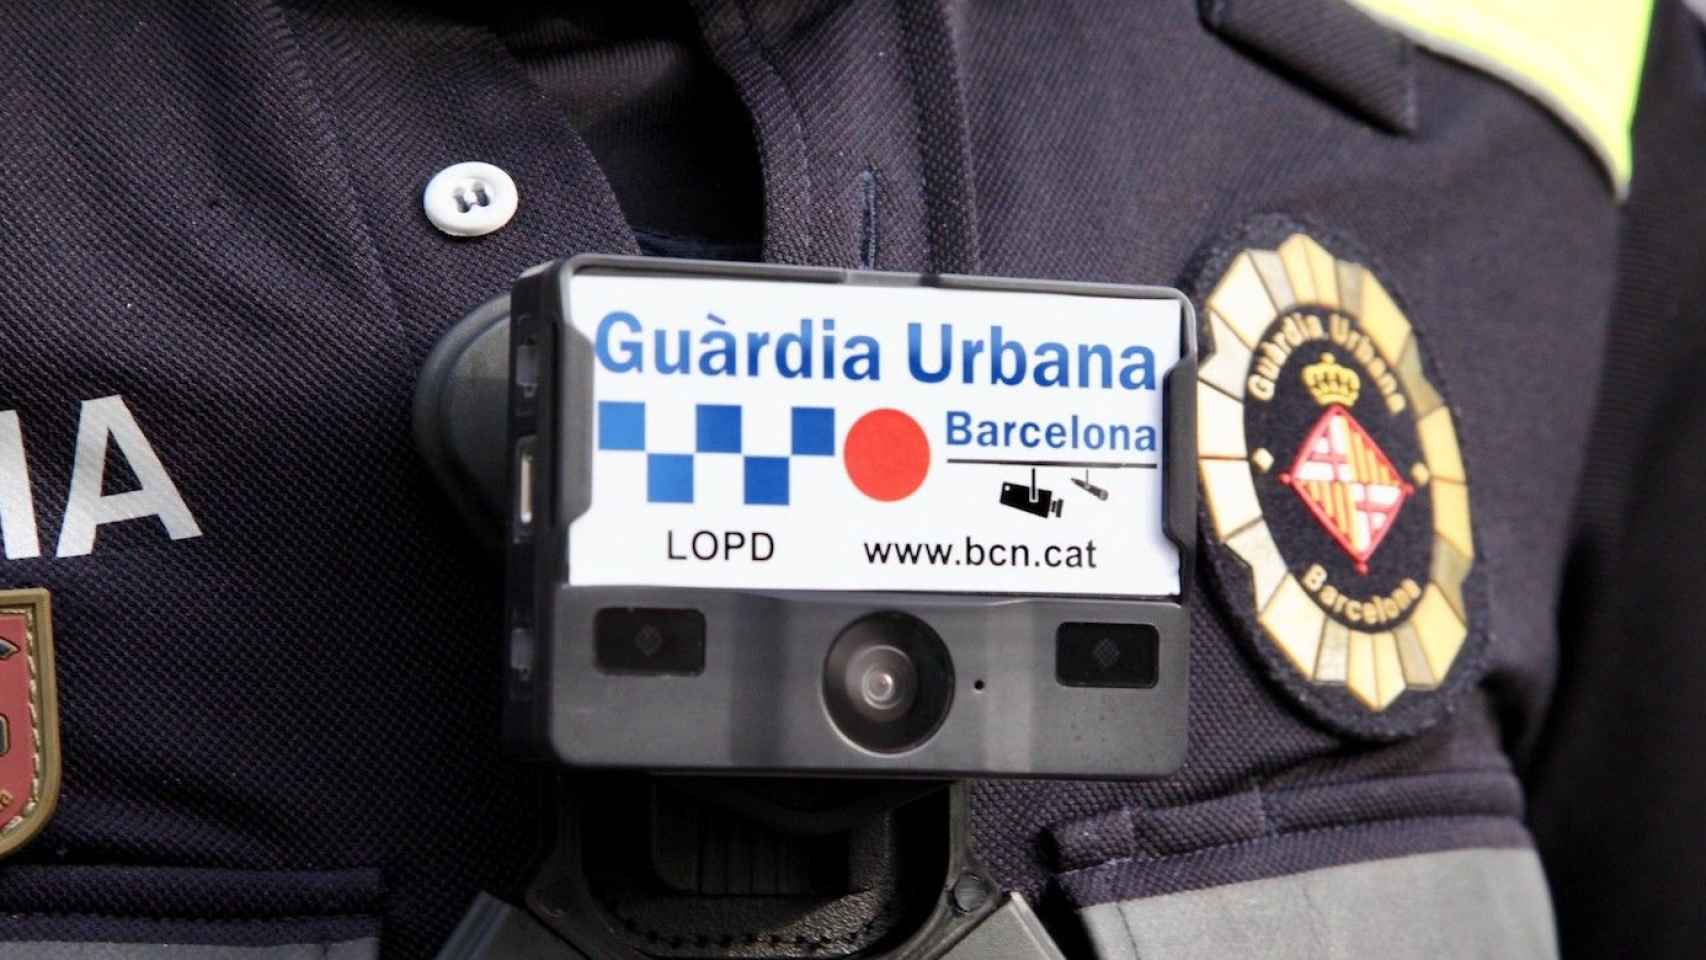 Una cámara unipersonal en el pecho de un agente de la Guardia Urbana